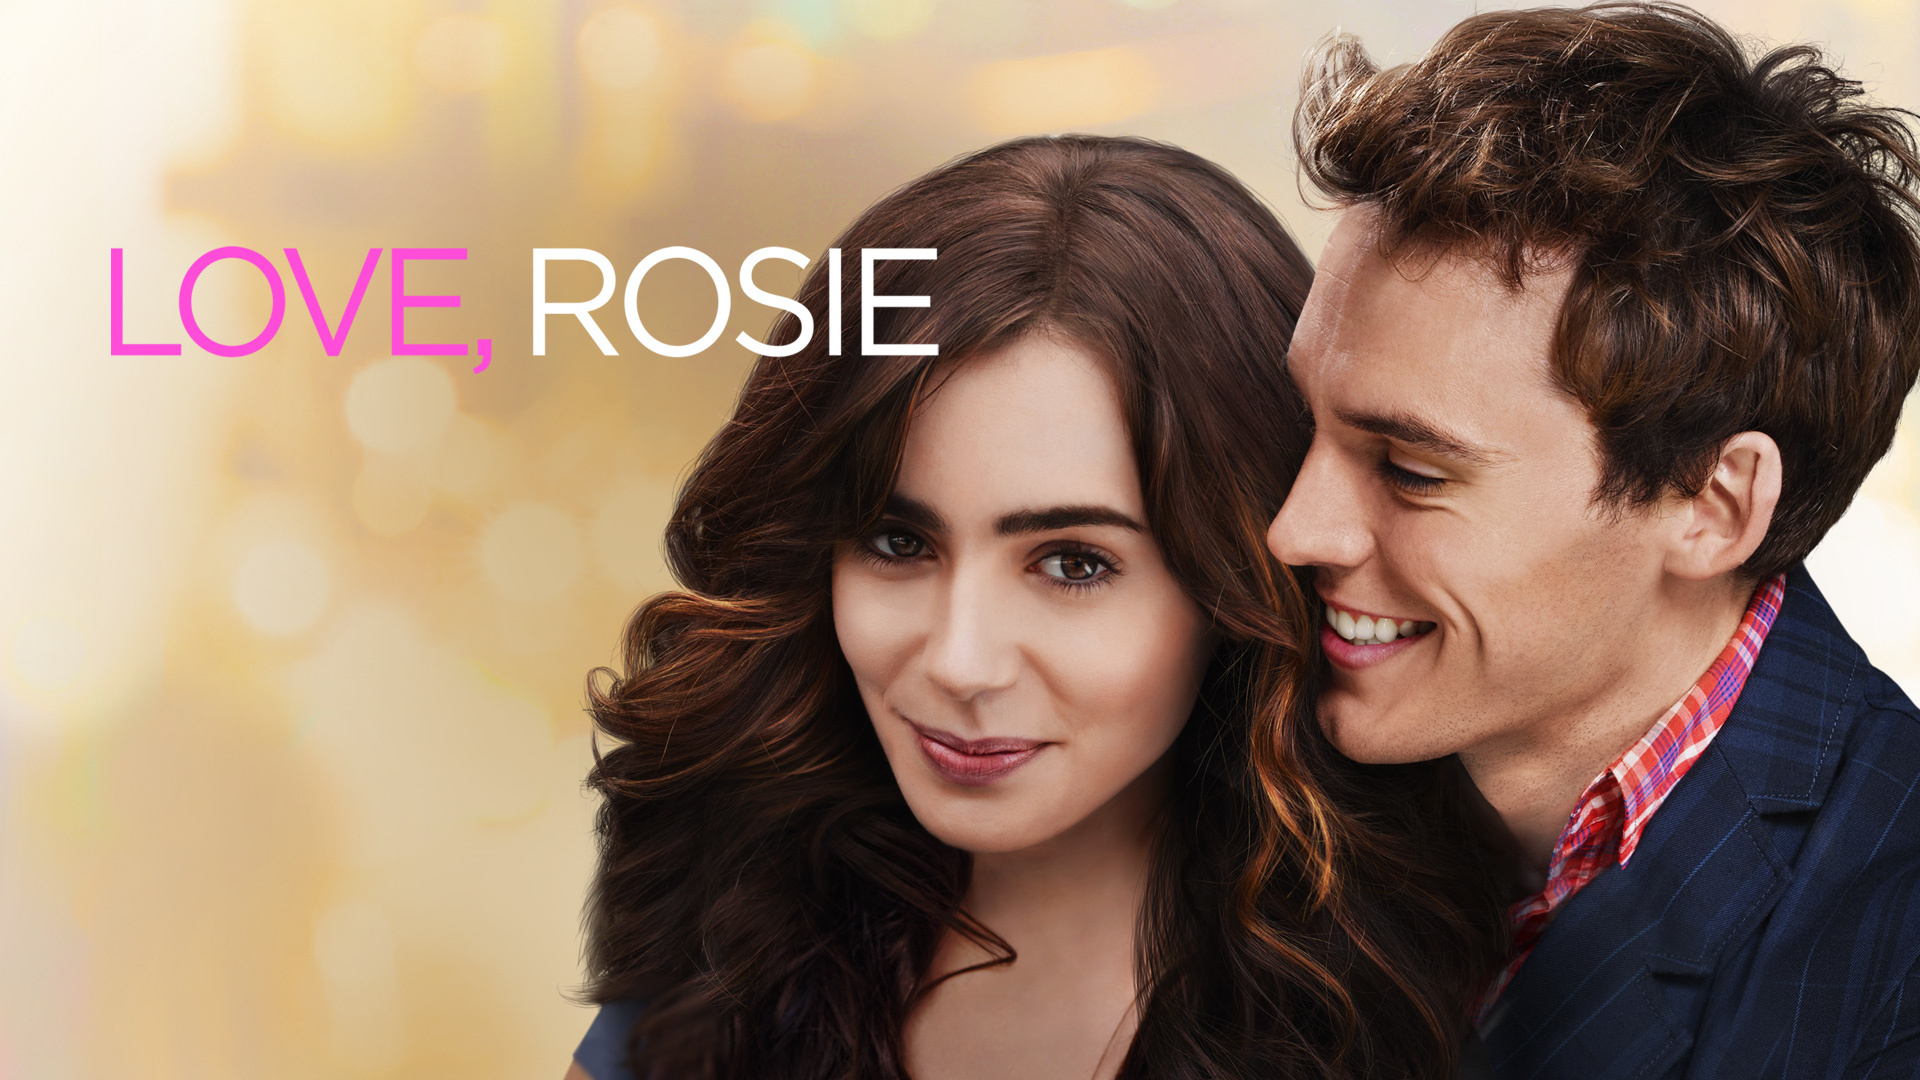 Love rosie hd movie download